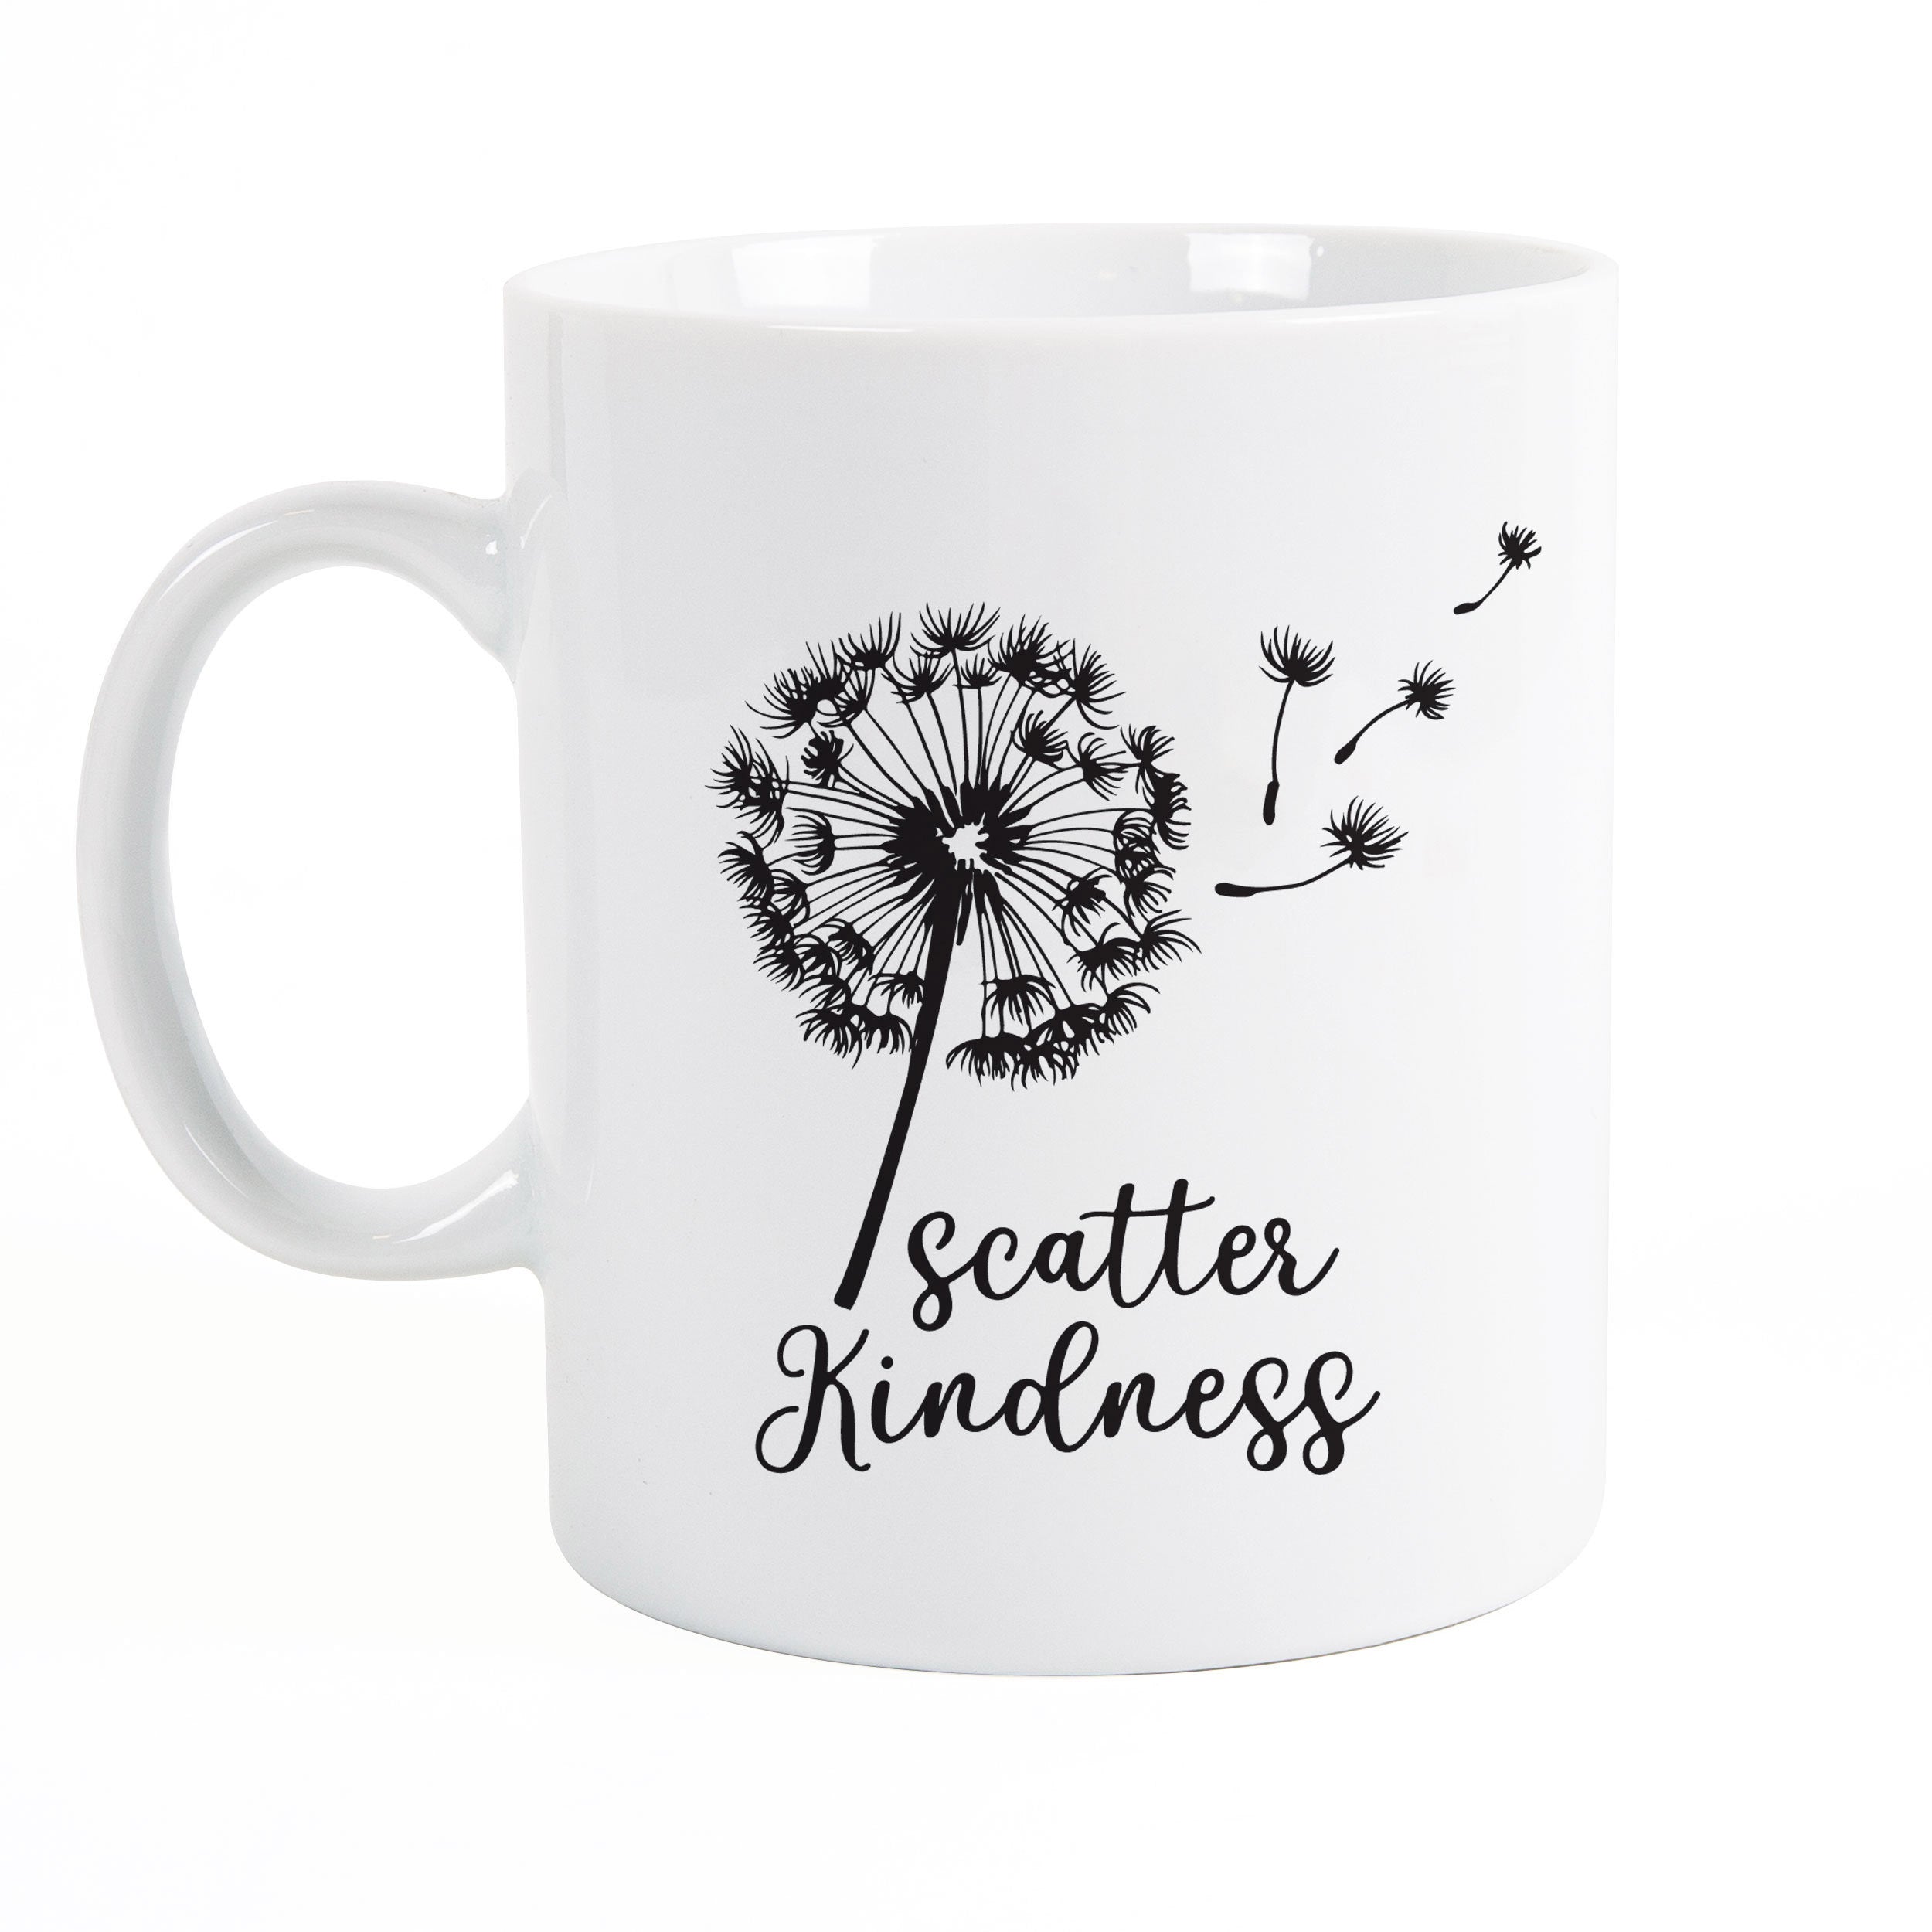 **Scatter Kindness Mug